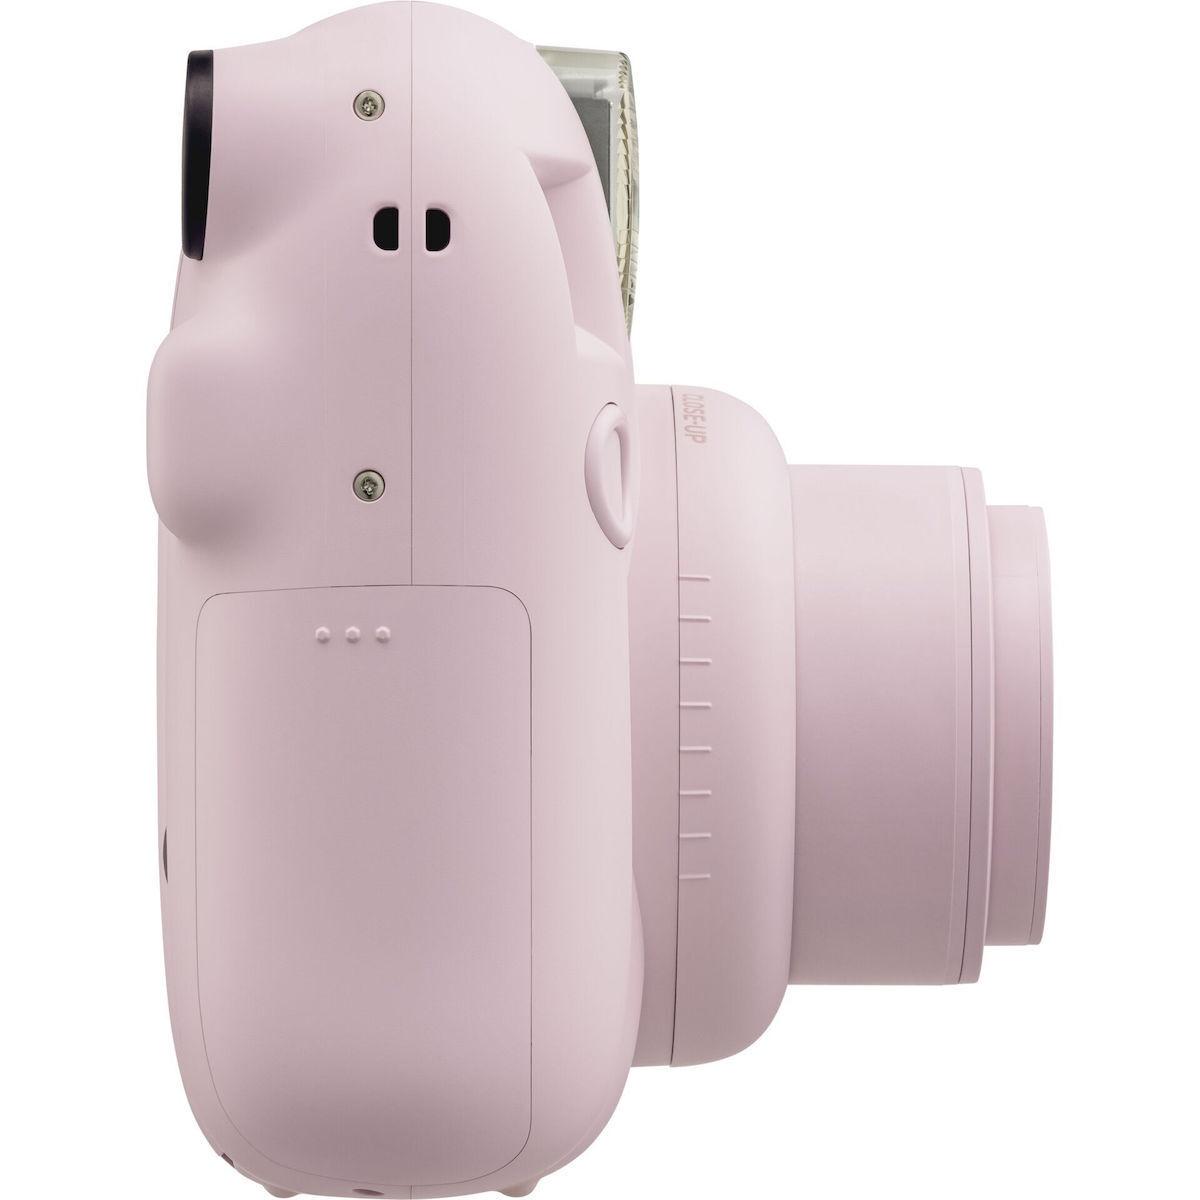 Fujifilm Φωτογραφική μηχανή instax mini 12  Blossom Pink (16806107)